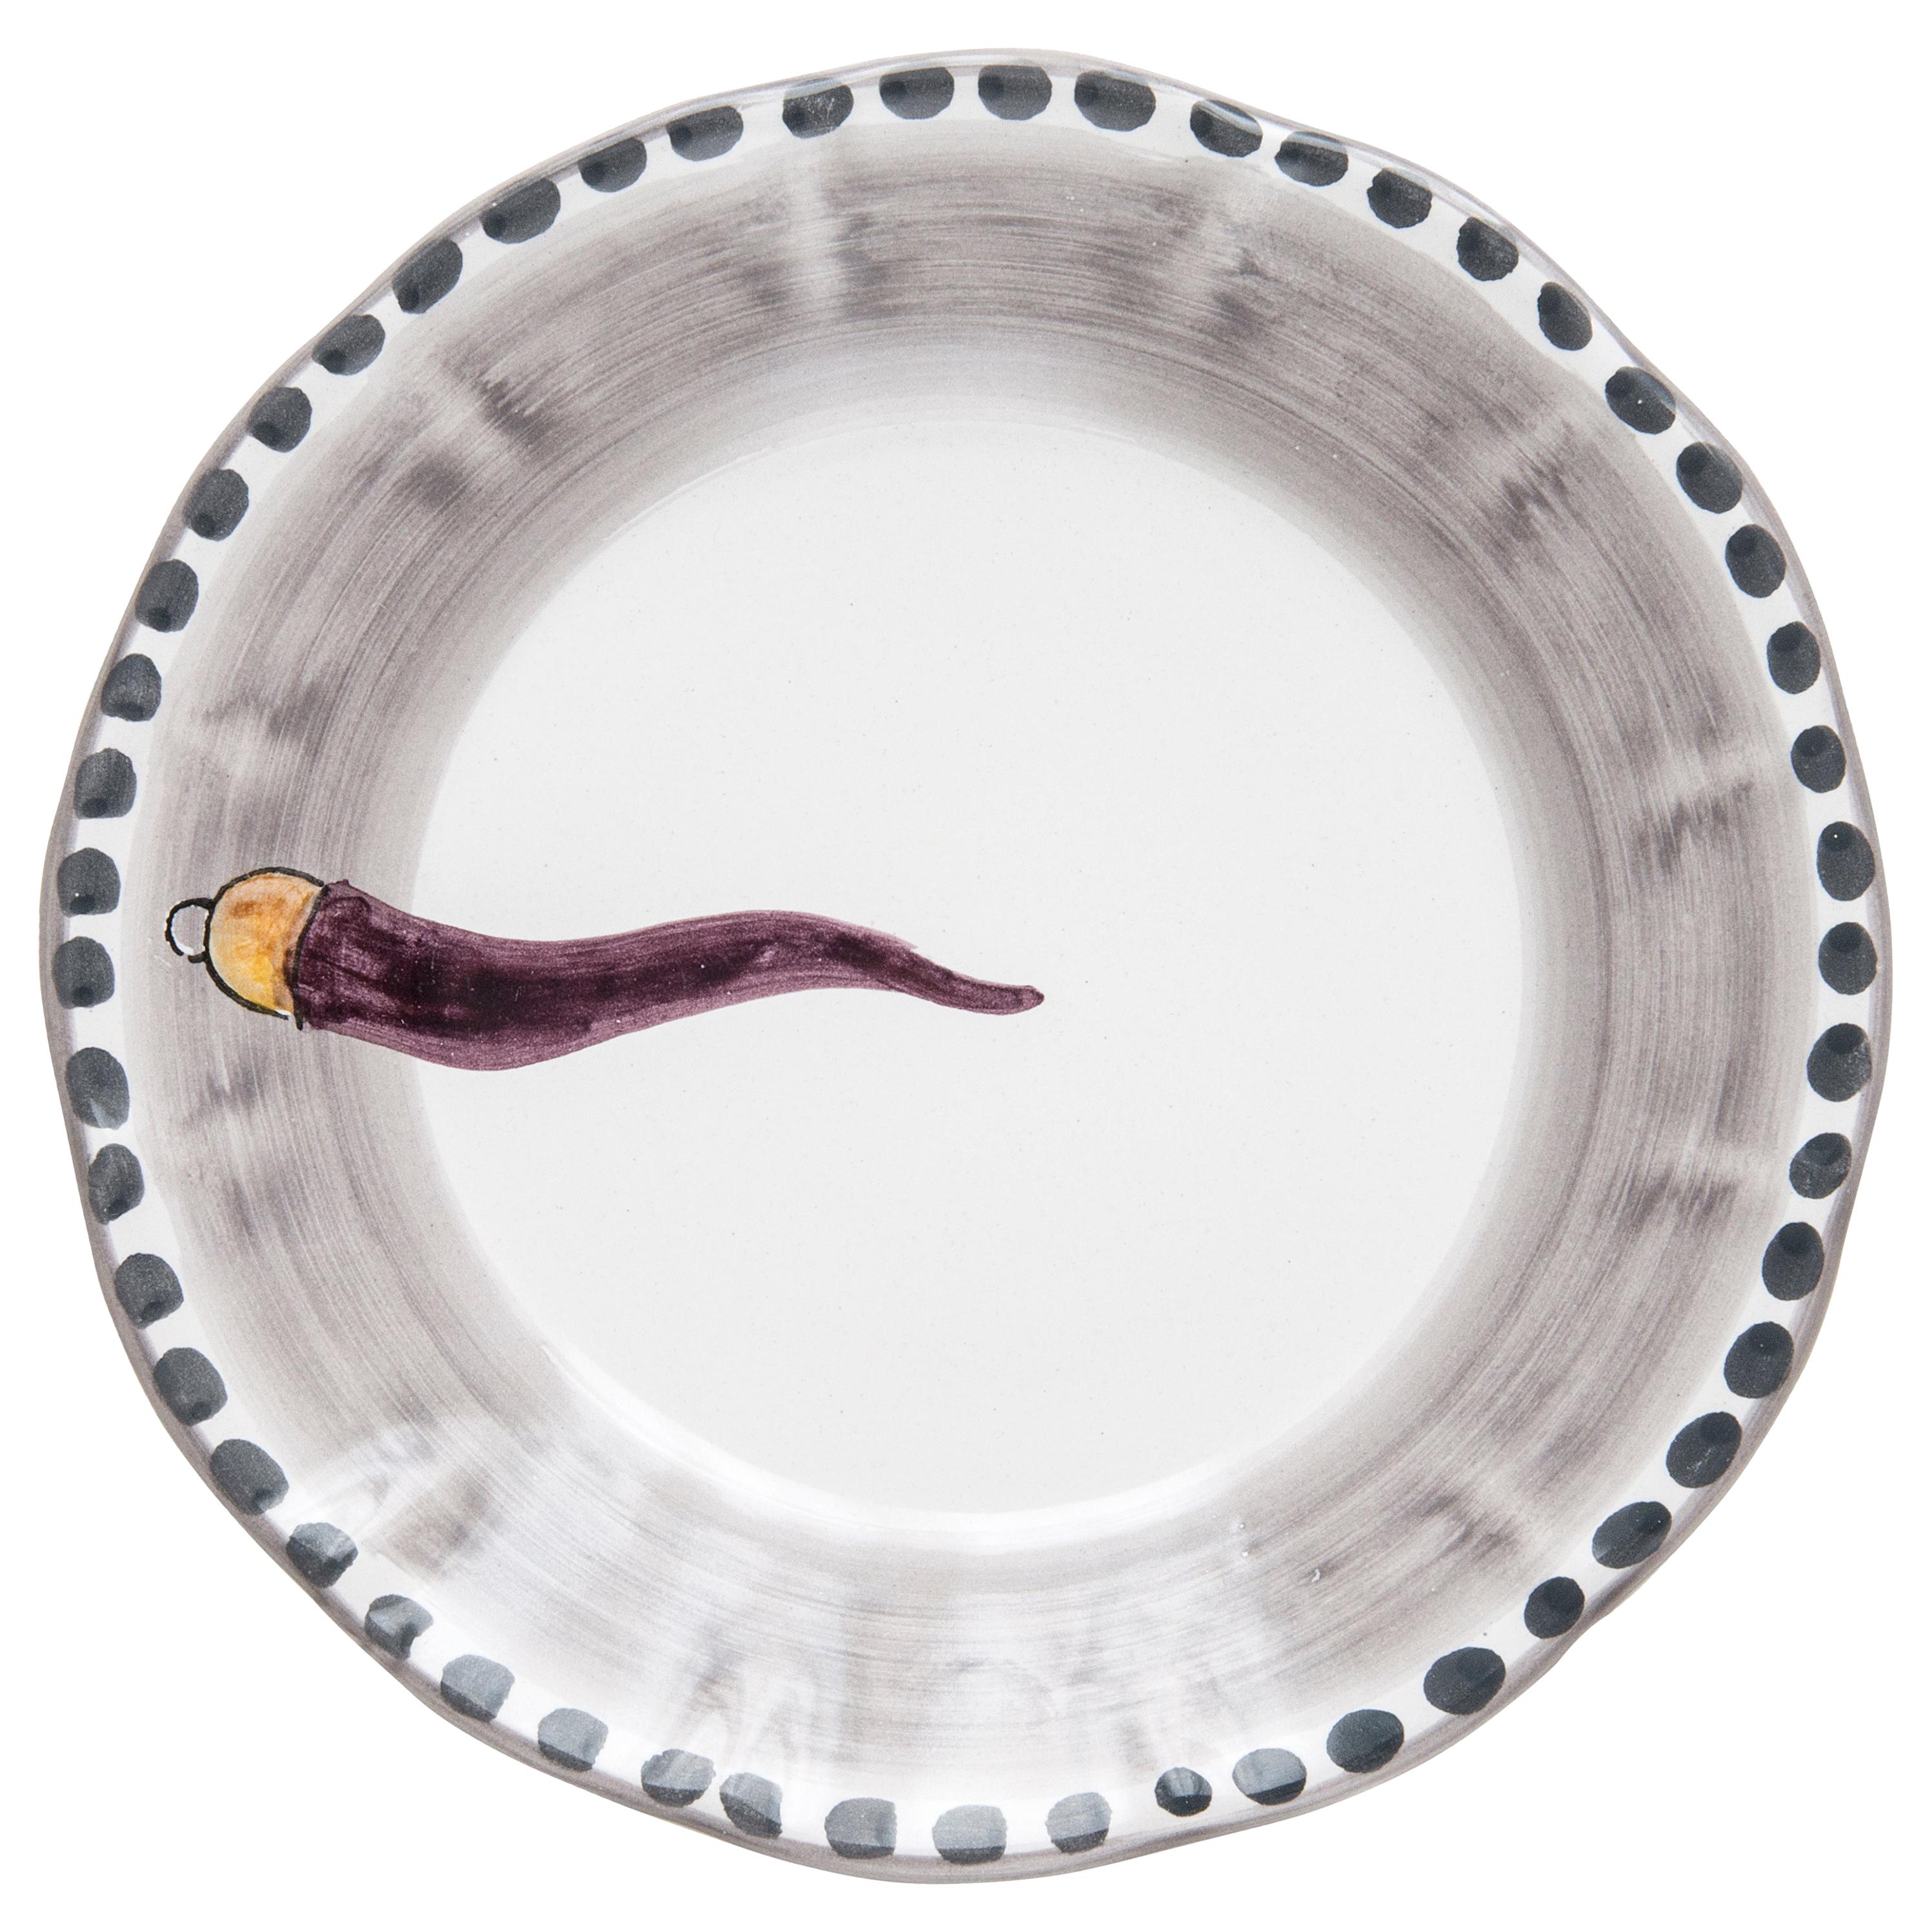 Assiette latérale en céramique peinte à la main du 21e siècle en violet et blanc, faite à la main